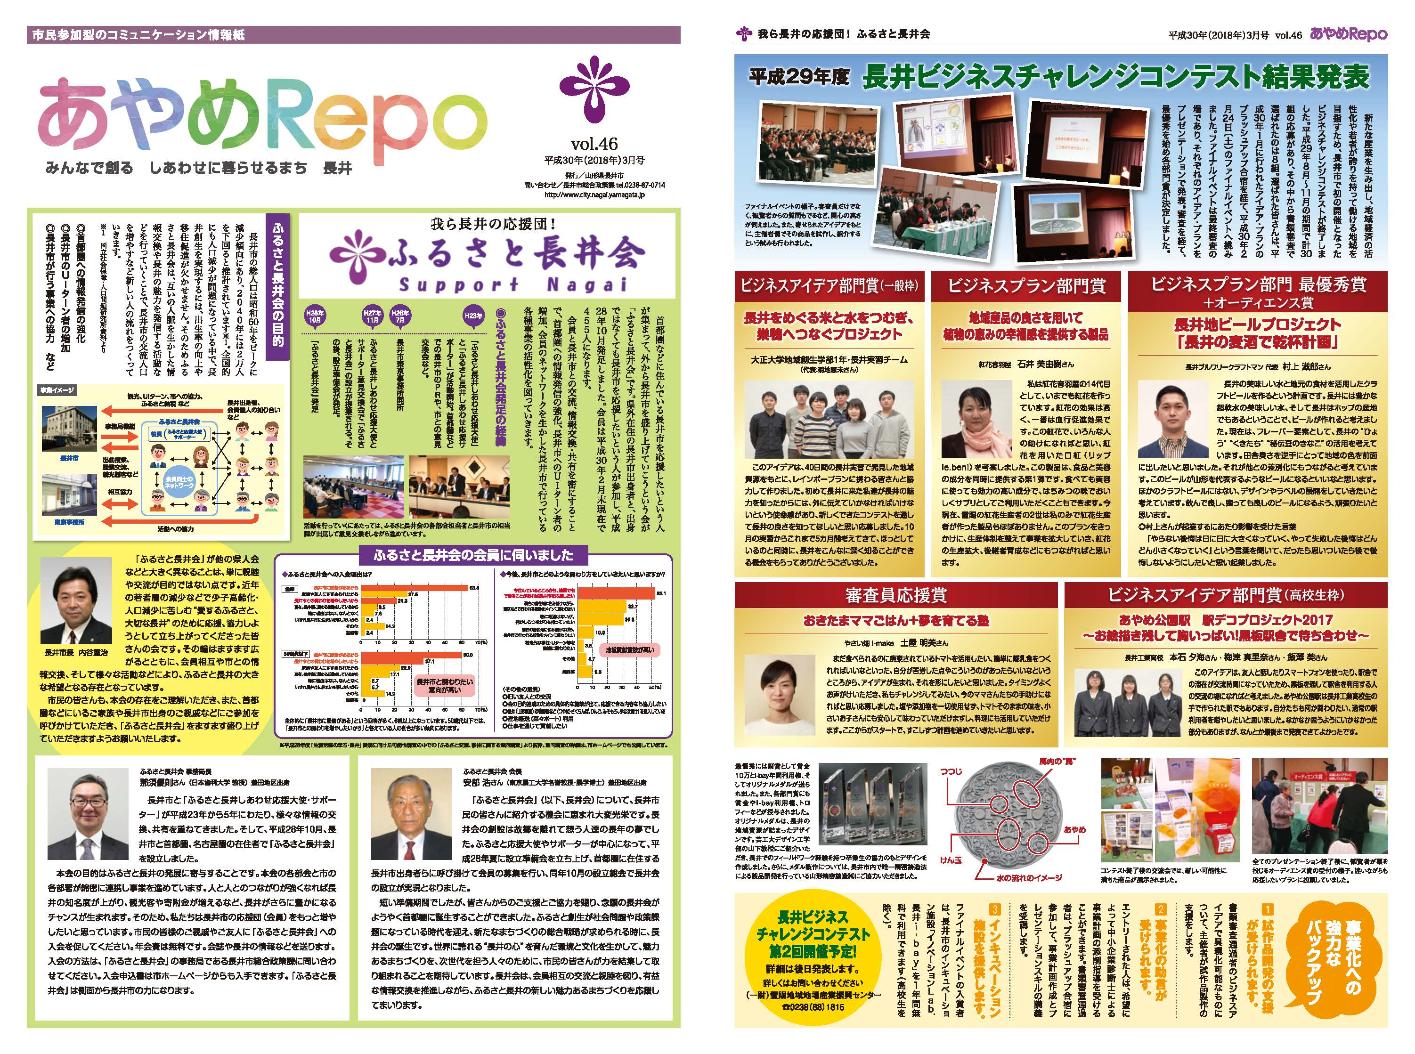 タブロイド版広報あやめRePo(れぽ)vol.46【平成30年3月15日号】の表紙、裏表紙の画像